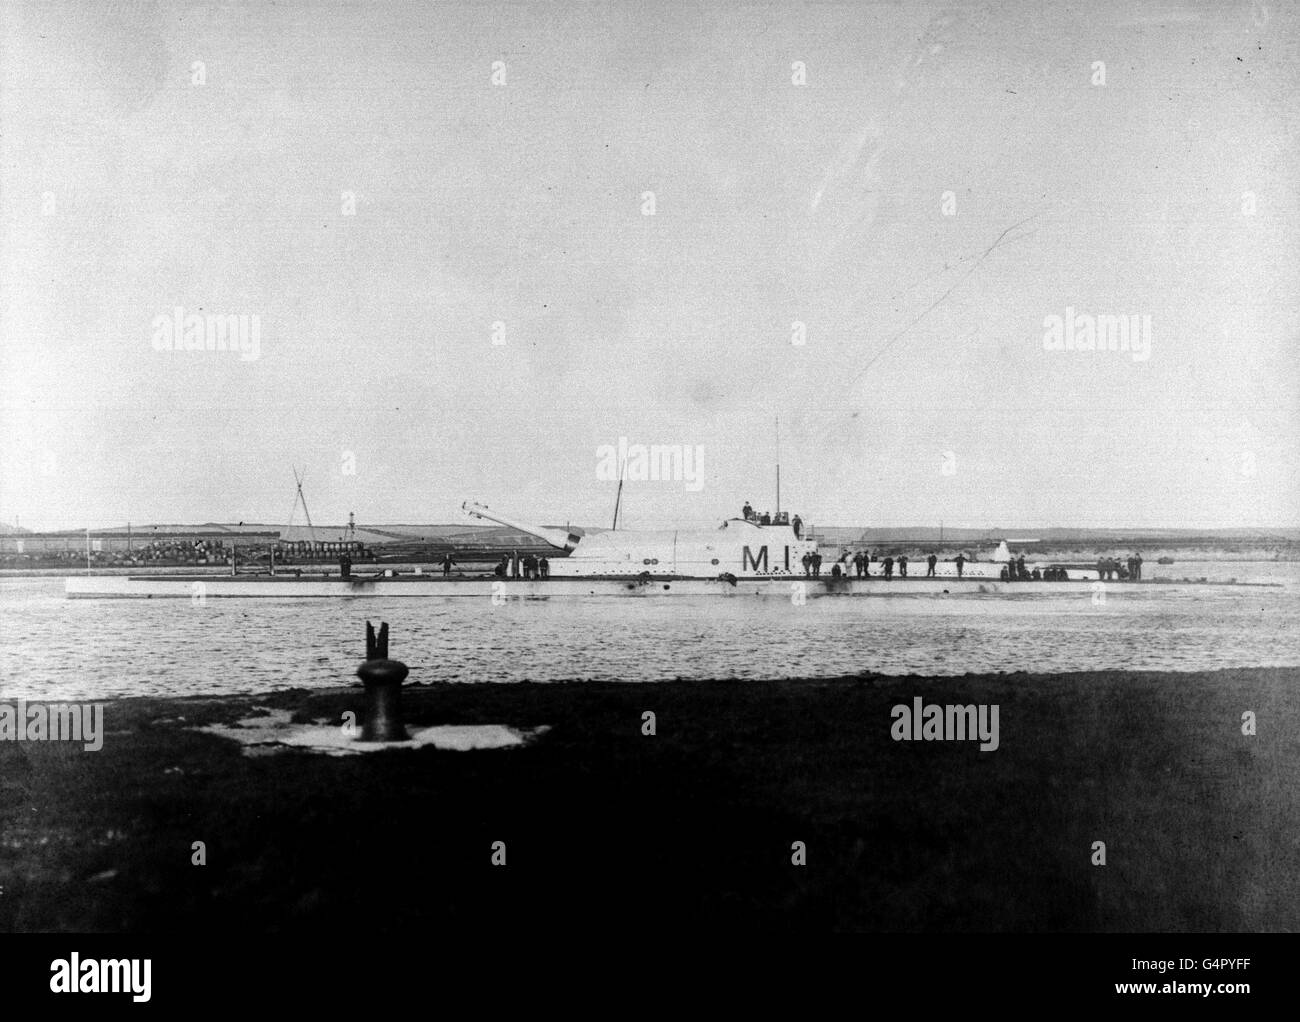 PA photo 1919: Un fichier de bibliothèque photo du sous-marin M1 de la première Guerre mondiale de la Marine royale, récemment (1999) découvert sur le fond marin au large de Portsmouth. On pense que le sous-marin a coulé après avoir été frappé accidentellement par un navire. Il n'y avait pas de survivants. Banque D'Images